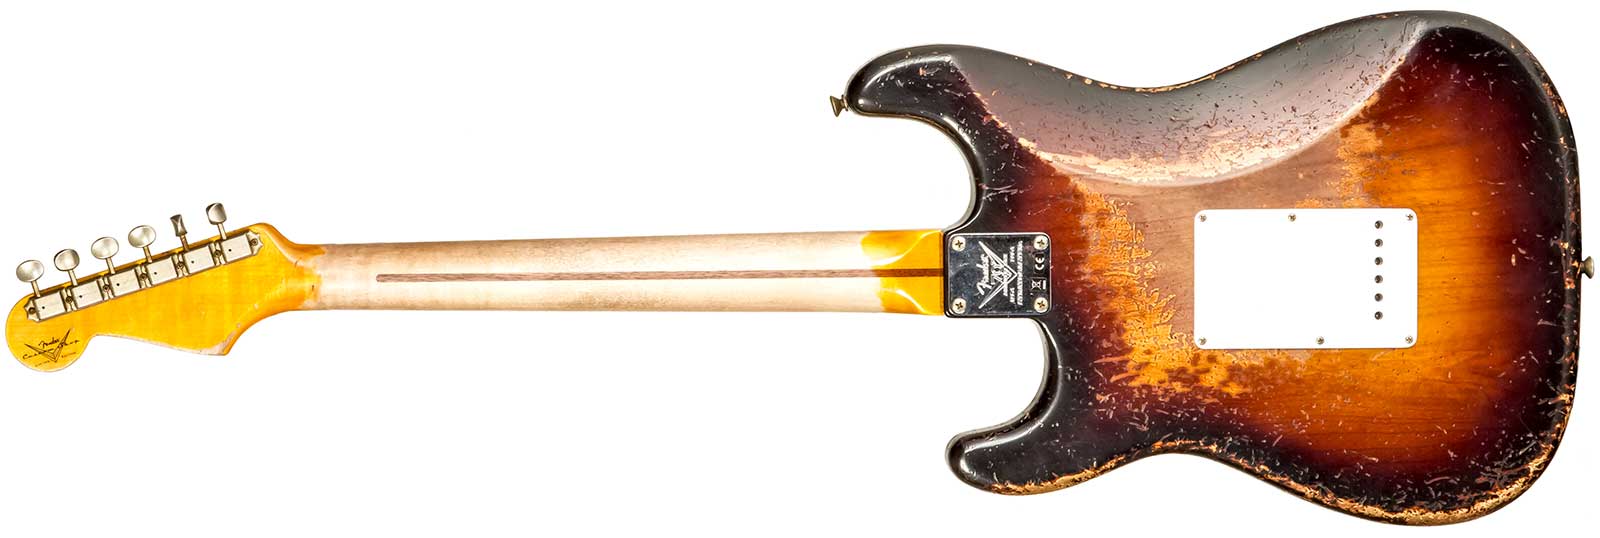 Fender Custom Shop Strat 1954 70th Anniv. Mn #xn4378 - Super Heavy Relic 2-color Sunburst - E-Gitarre in Str-Form - Variation 1